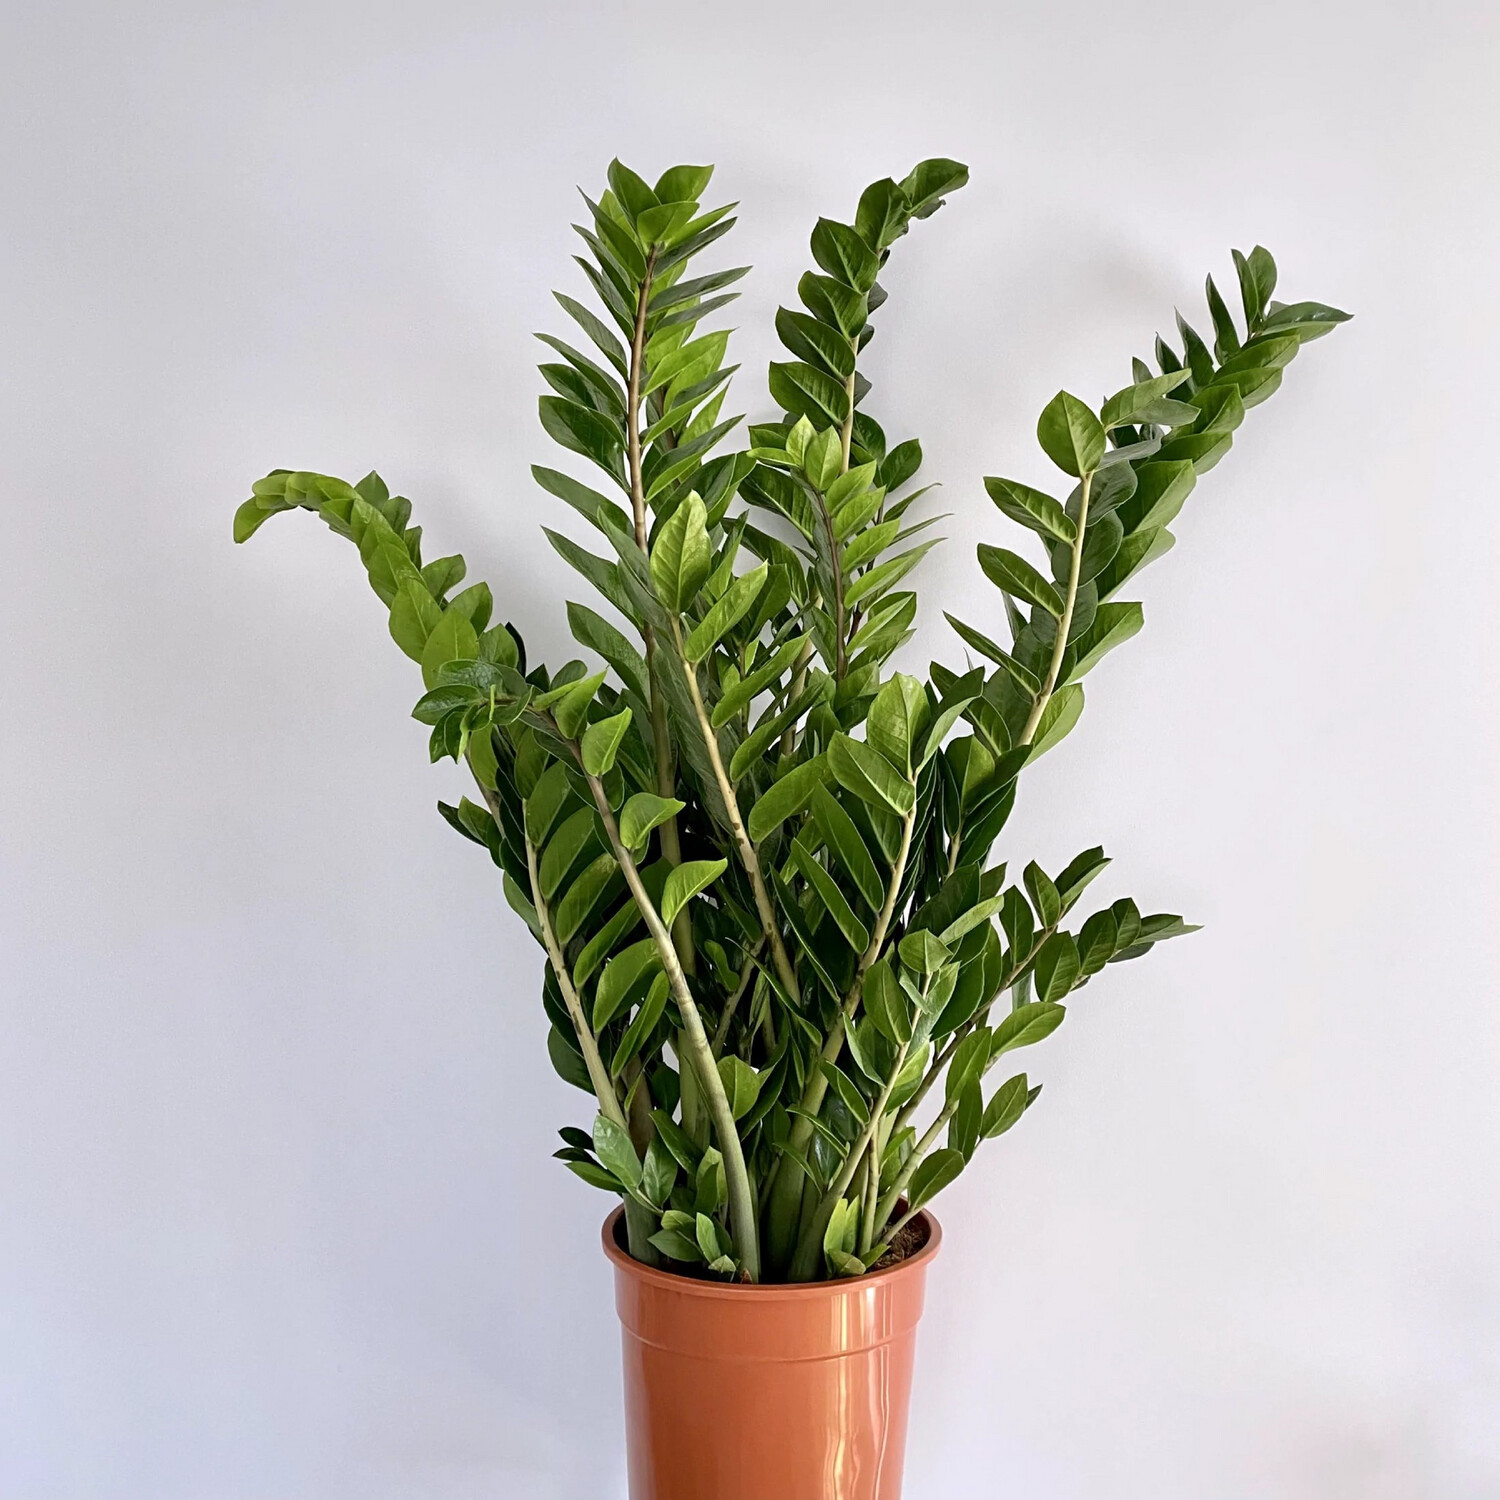 Zamnia (Zamioculcas zamiifolia)